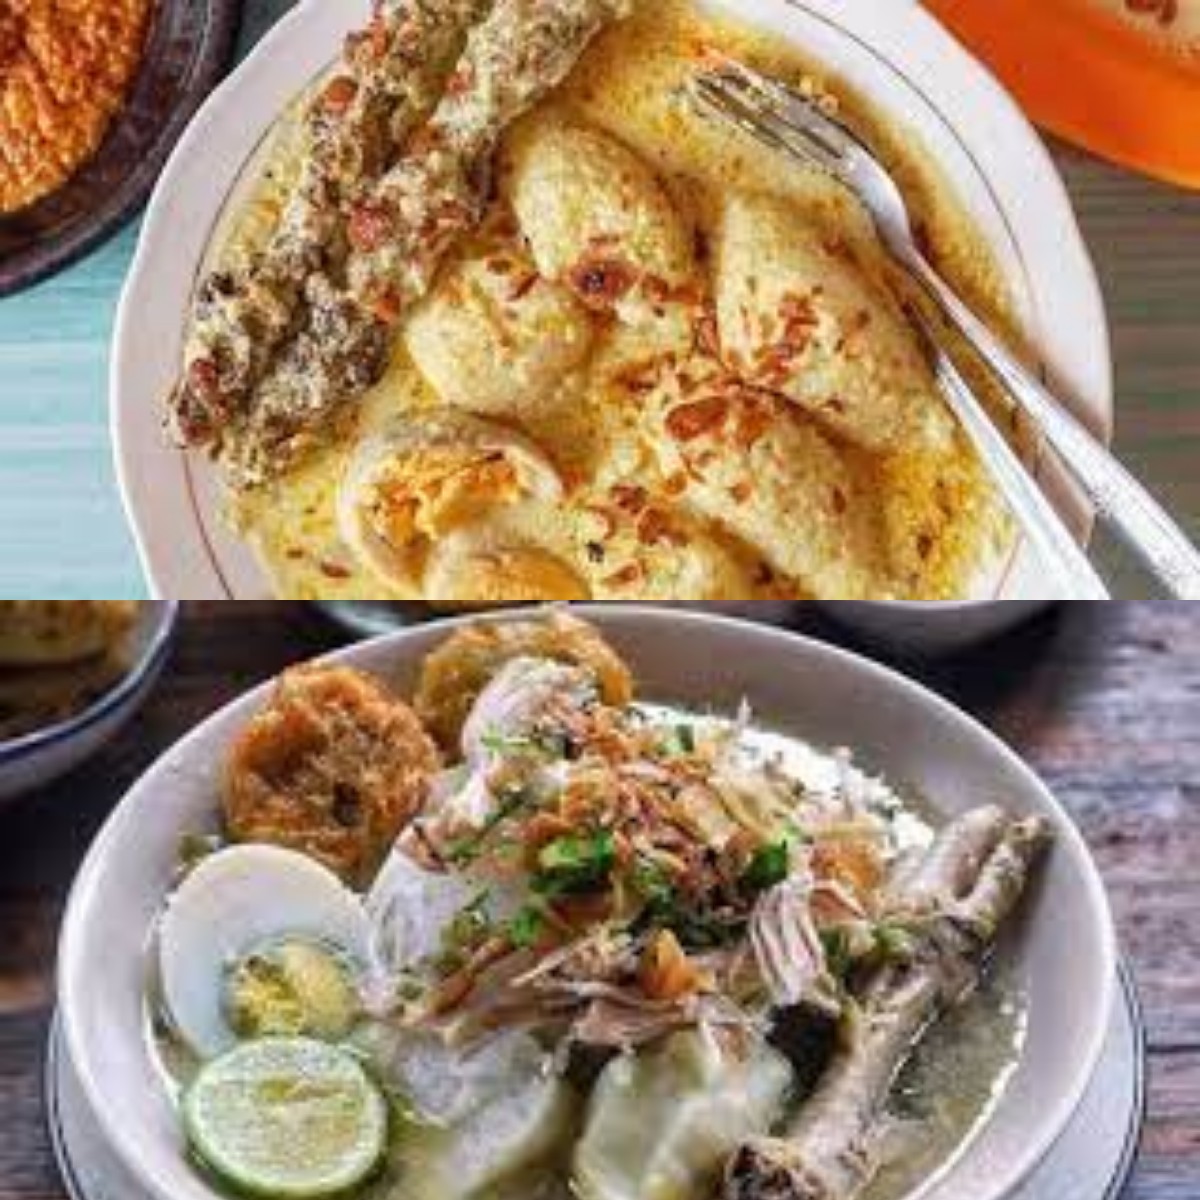 Wisata Kuliner yang Bikin Ngiler Nih! Kamu Wajib Banget Cobain Kuliner Khas Banjarbaru yang Nikmat Ini